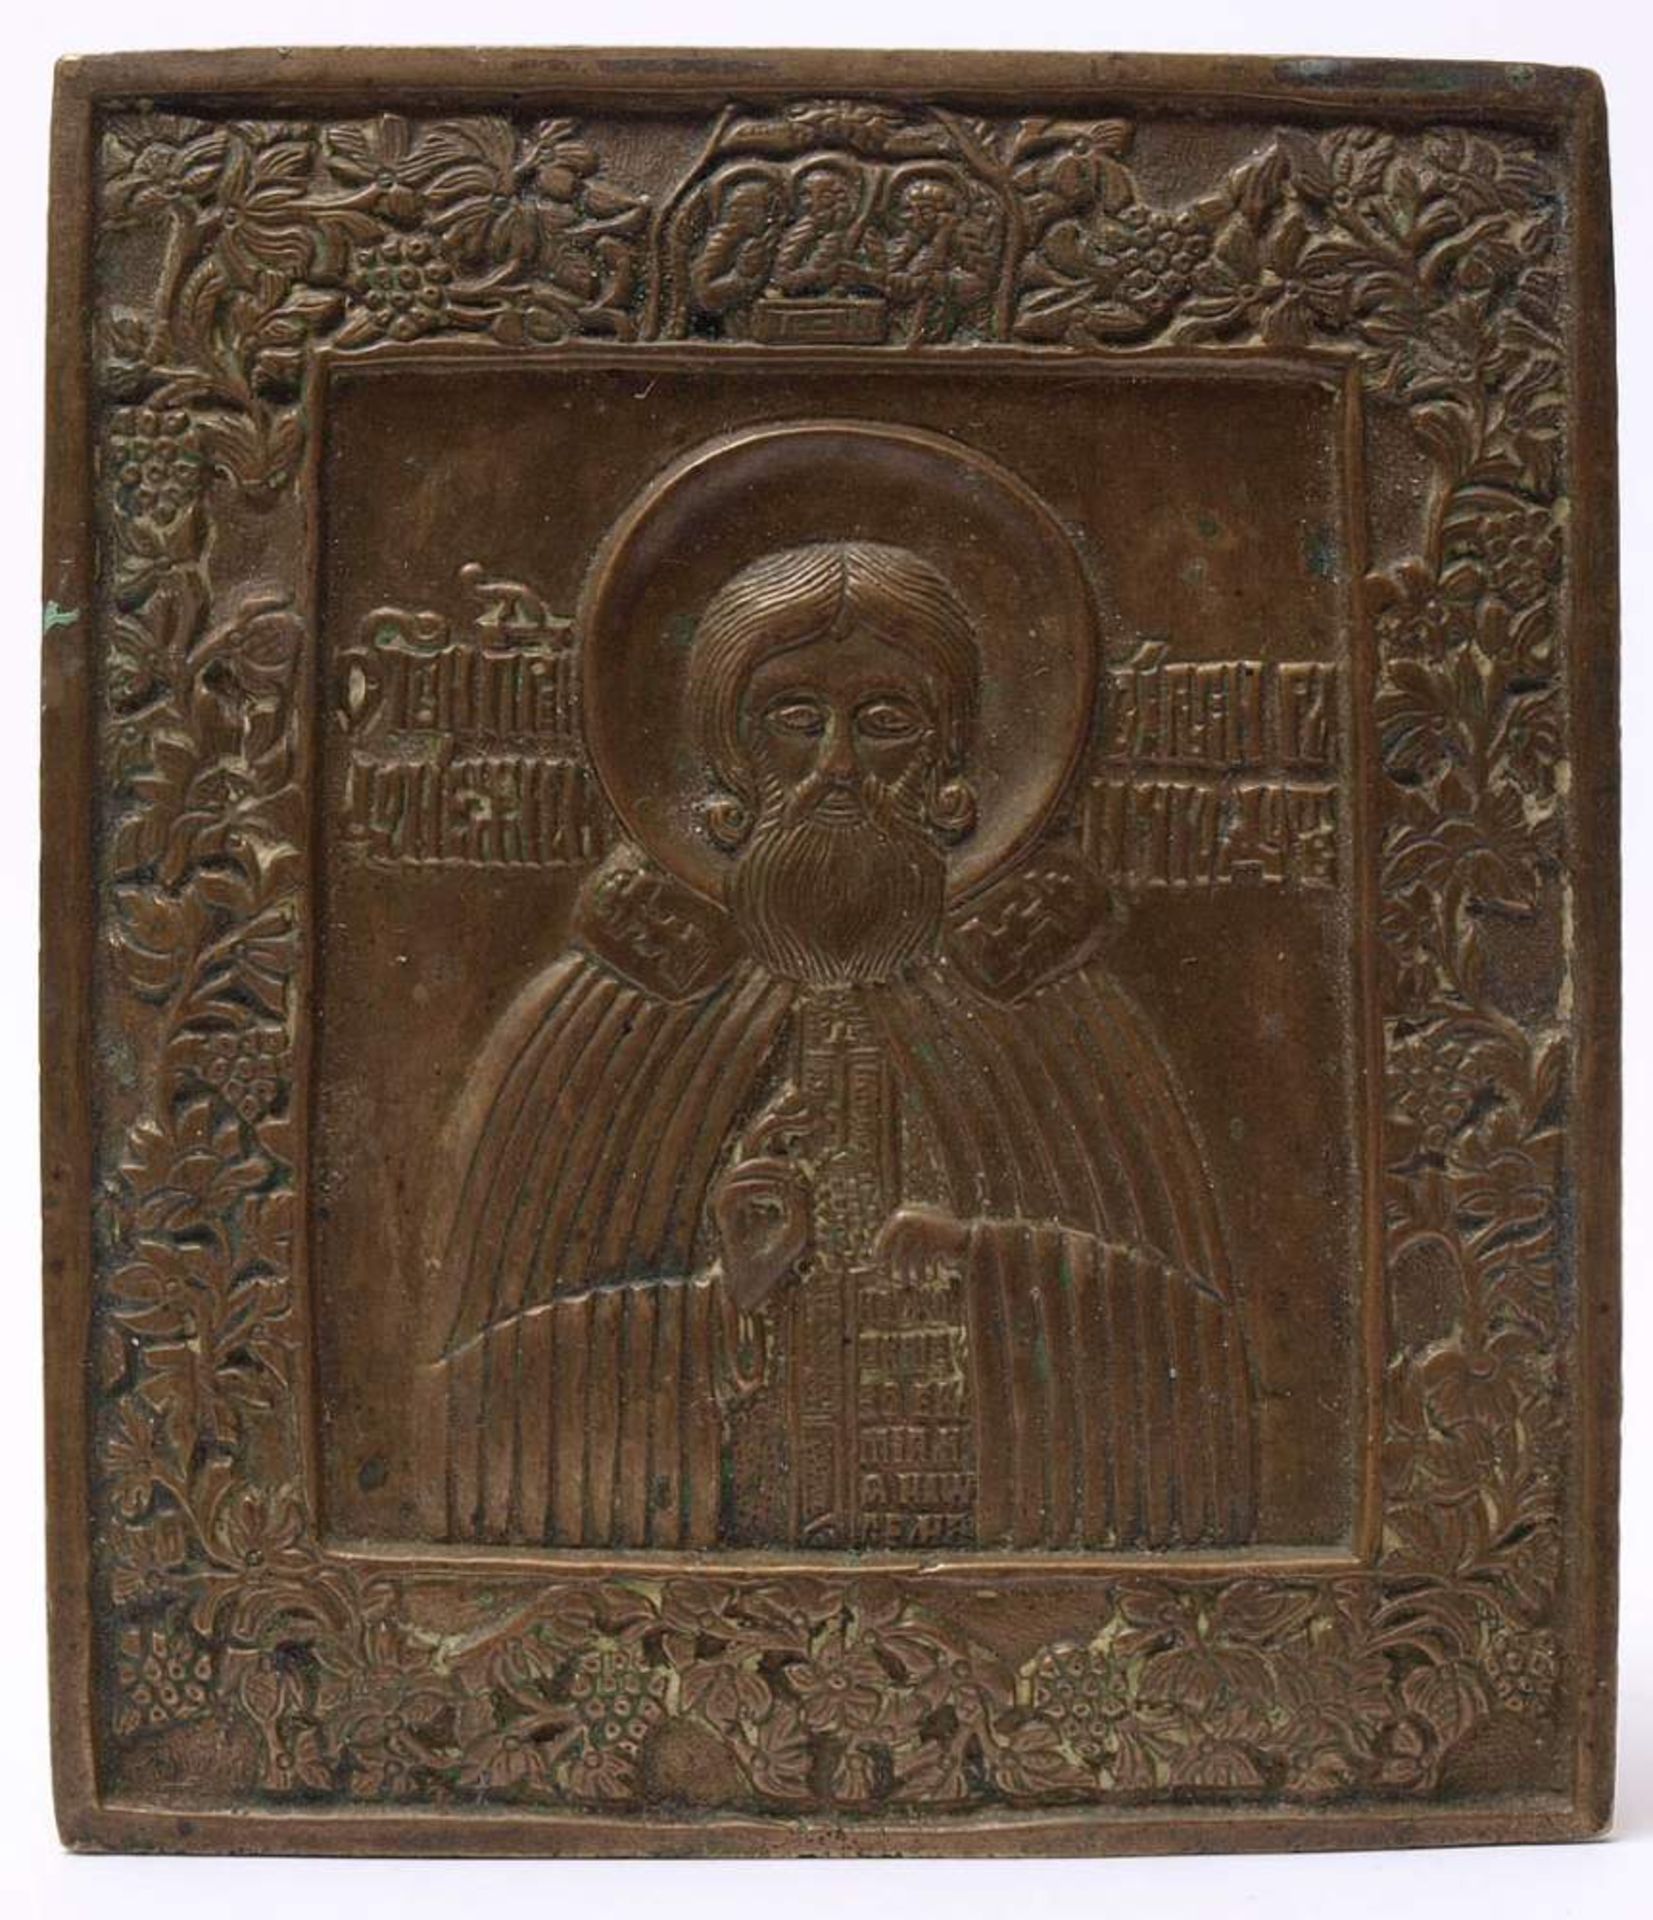 Reiseikone, Russland, 19.Jhdt.Heiliger Nikolaus, umgeben von Traubenranken. Verso reliefierte